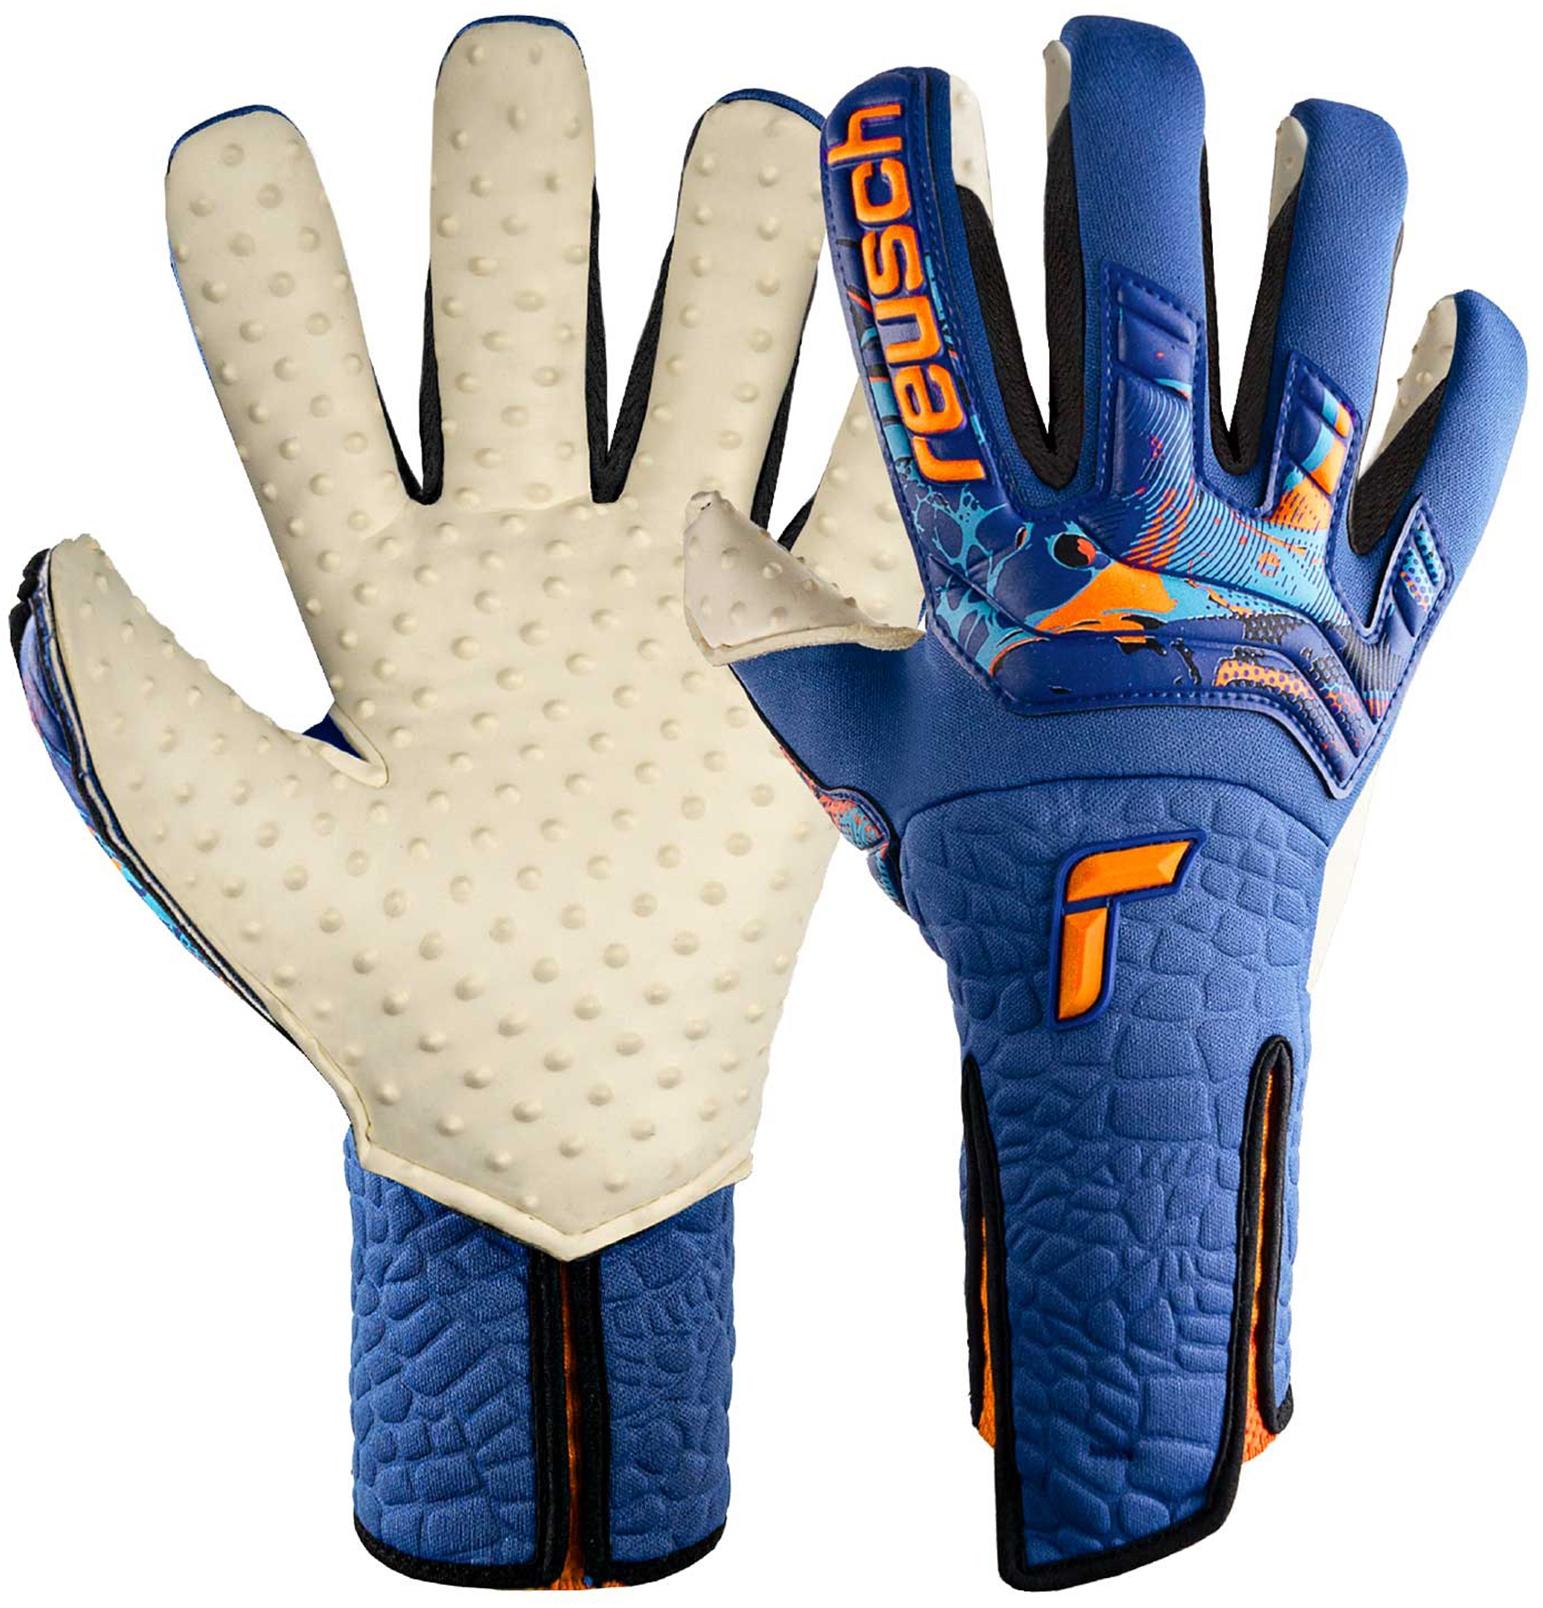 Handschuhe im Sale in blau kaufen von SportScheck im Online Shop